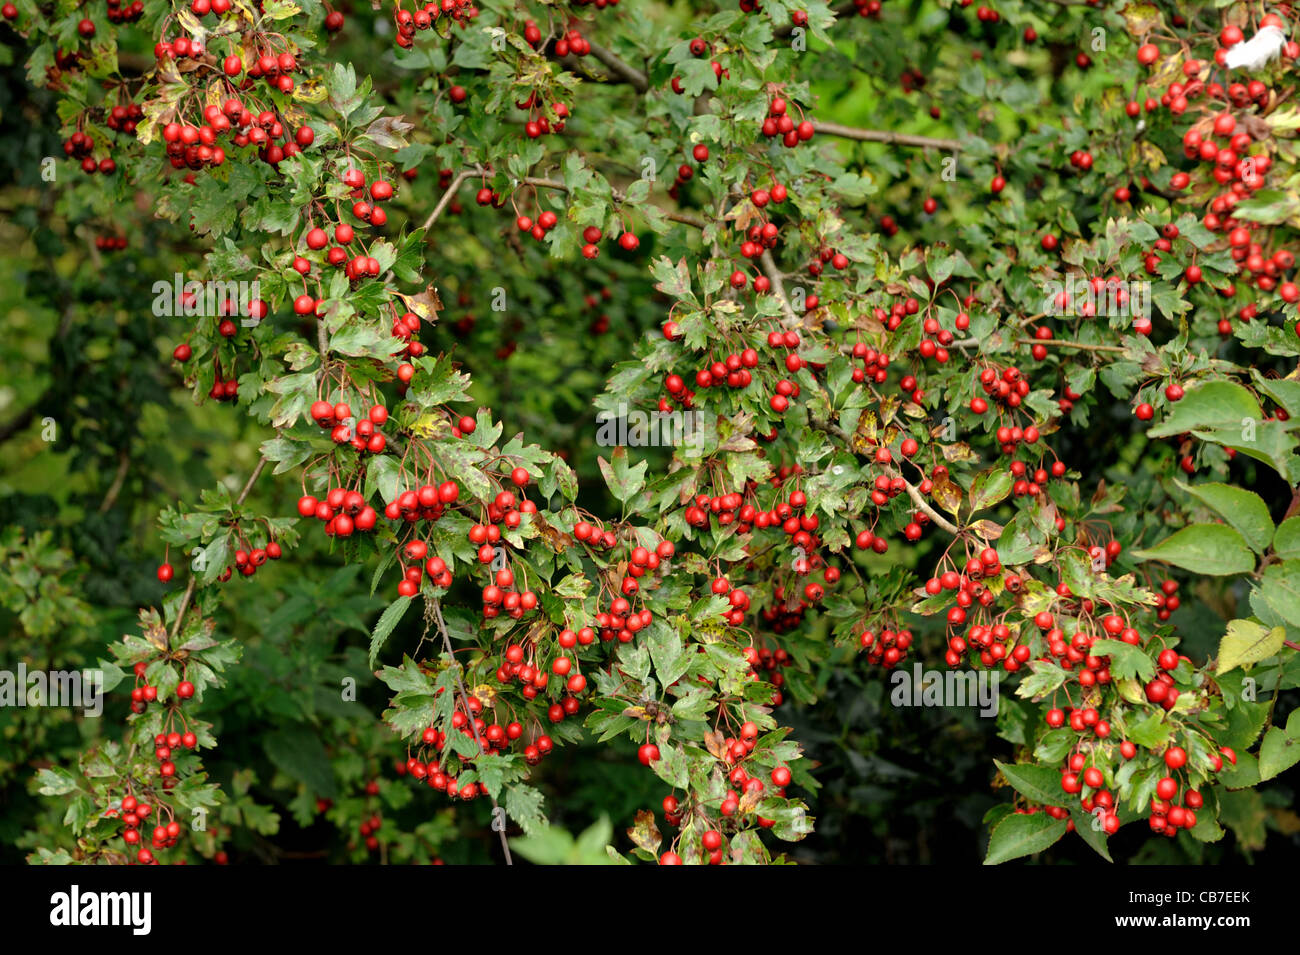 Una gran cantidad de fruta roja madura o bayas de espino (Crataegus monogyna) en el árbol. Foto de stock